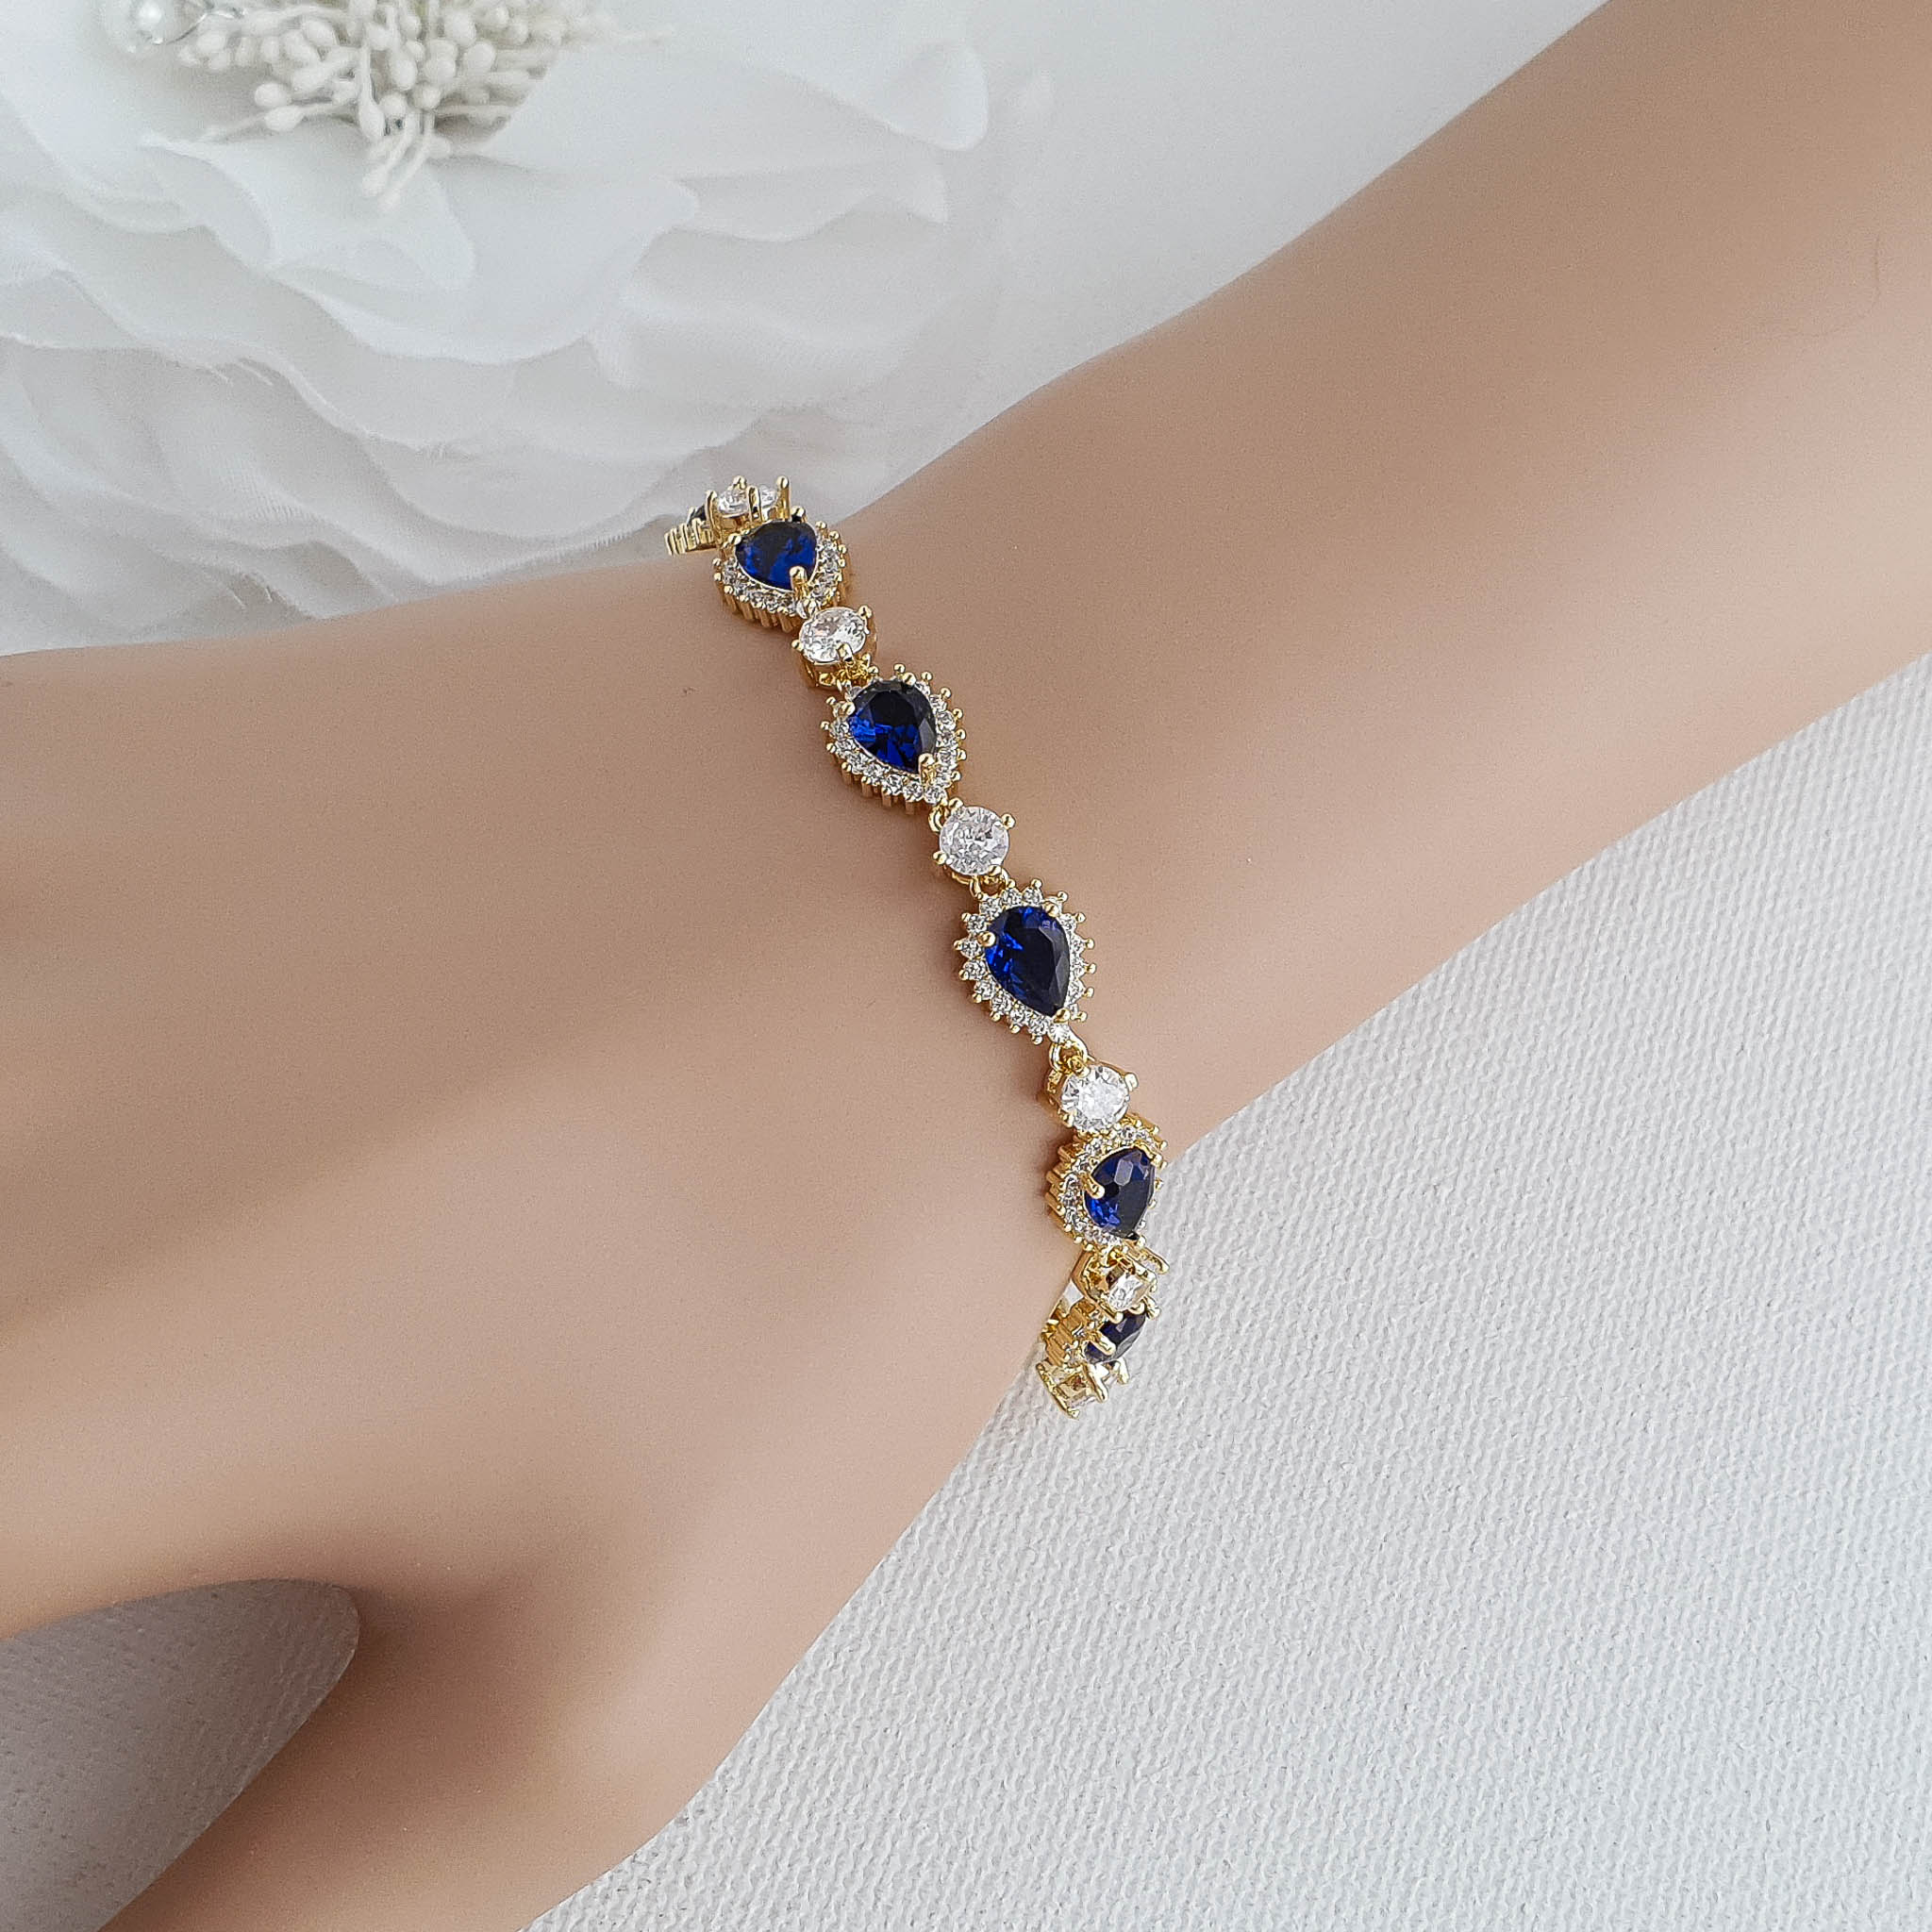 Lovely bracelet for formal wear | Beautiful bracelet, Bracelets, Accessories